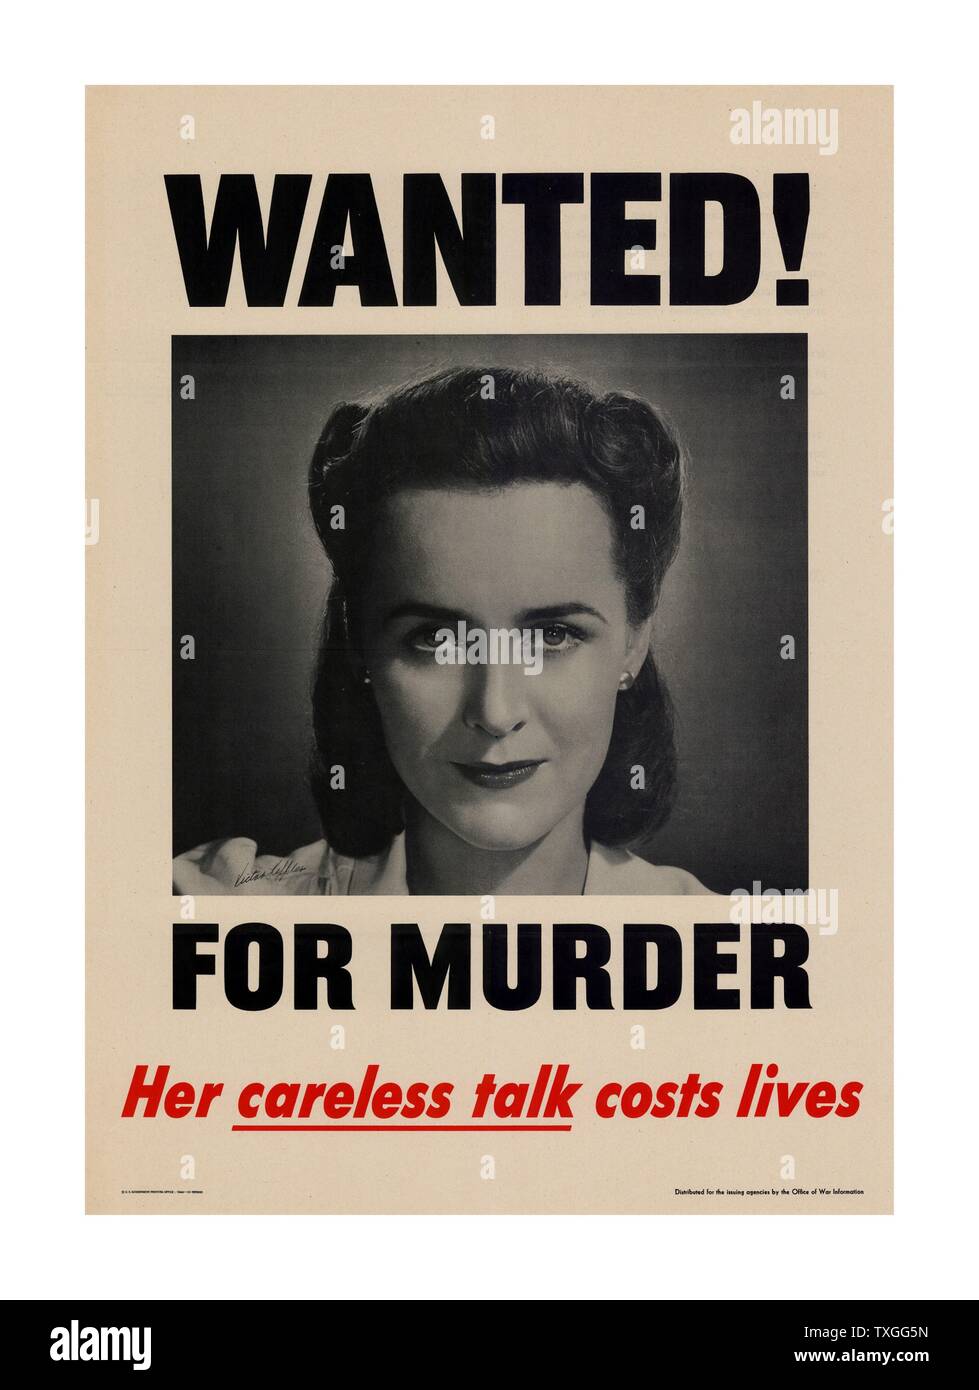 Propagandaplakat aus dem zweiten Weltkrieg. Verspotten Sie wollte Poster beschuldigt eine Frau des Mordes wegen "lockere Gespräch" (reden, Strategien oder Truppenbewegungen etc..) Stockfoto